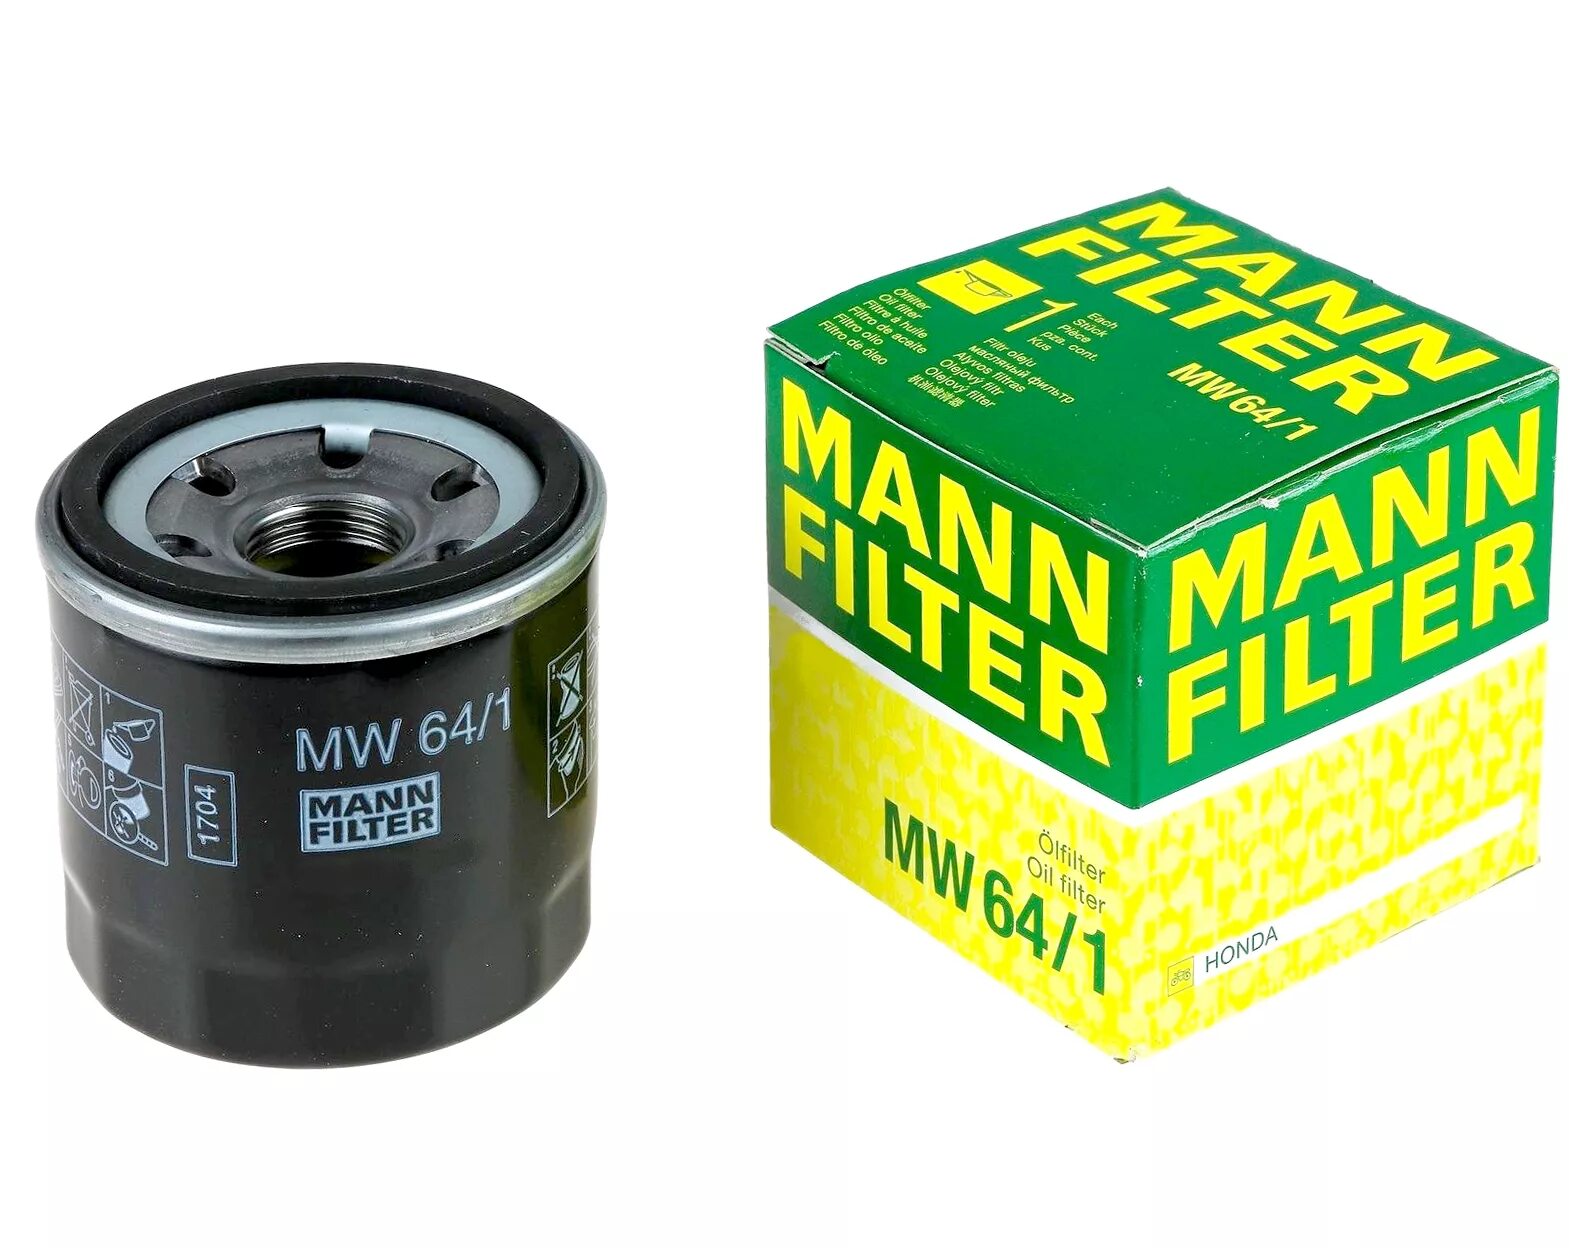 Масляный фильтр т32. Фильтр масляный Mann mw64. Масляный фильтр Mannol mw64. Mann-Filter MW 64/1 фильтр масляный для мотоциклов. Фильтр Манн 64/1 на Хонда.